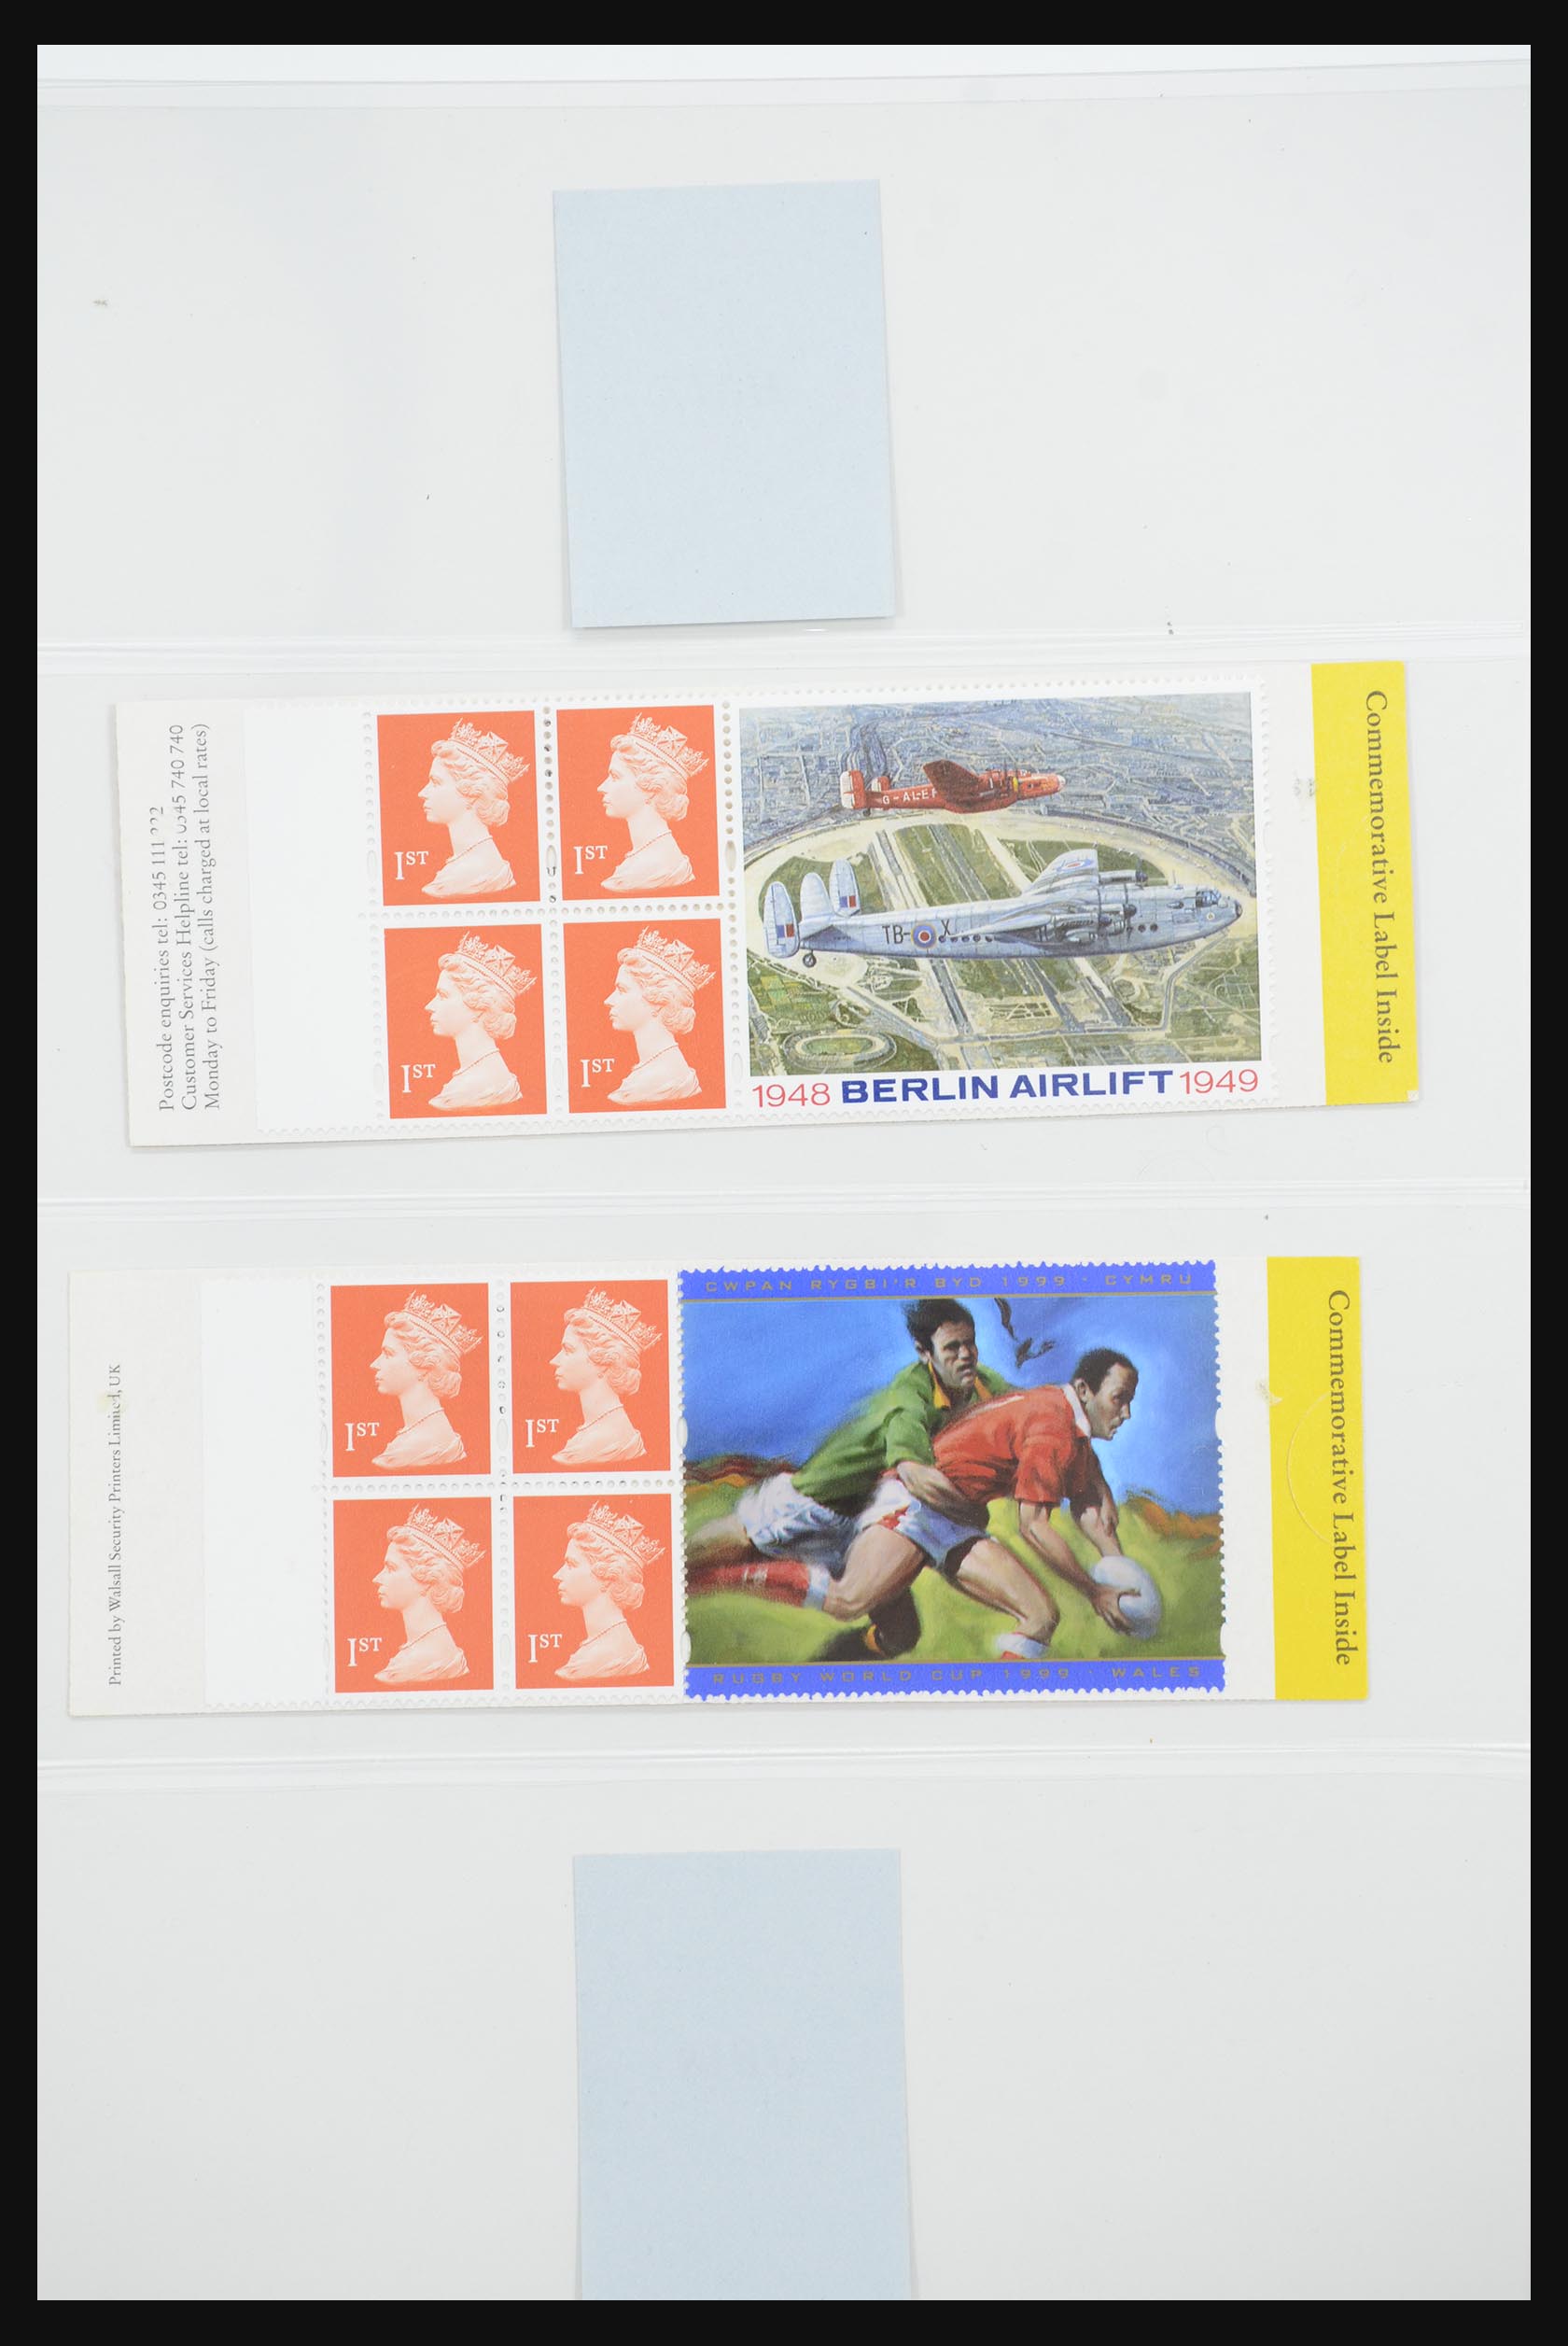 31960 050 - 31960 Engeland postzegelboekjes 1989-2000.